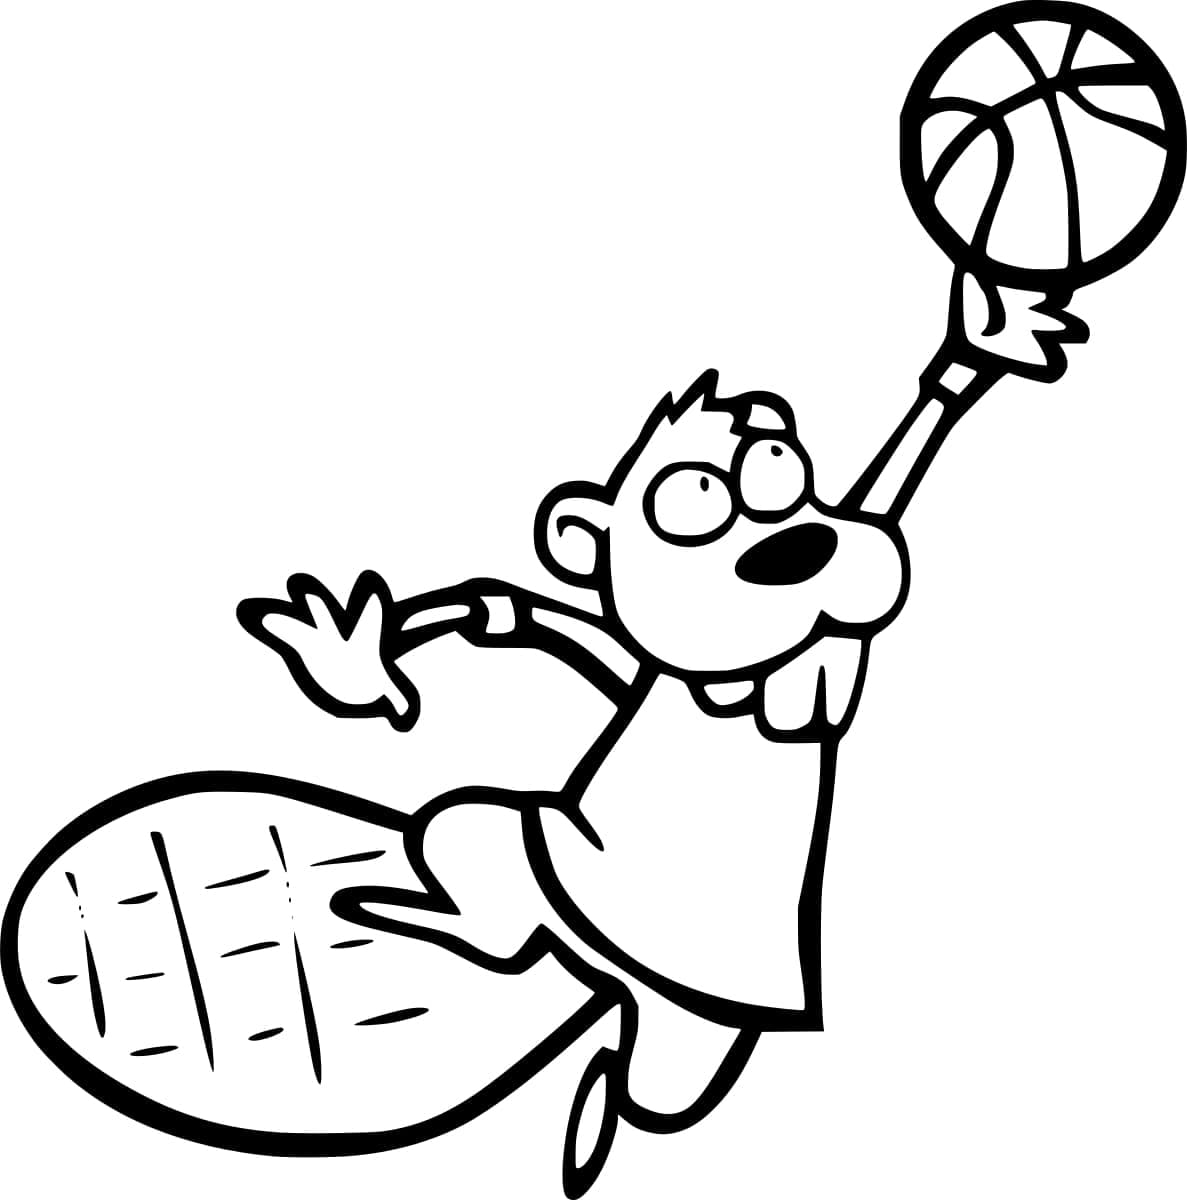 Castor Joue au Basket coloring page